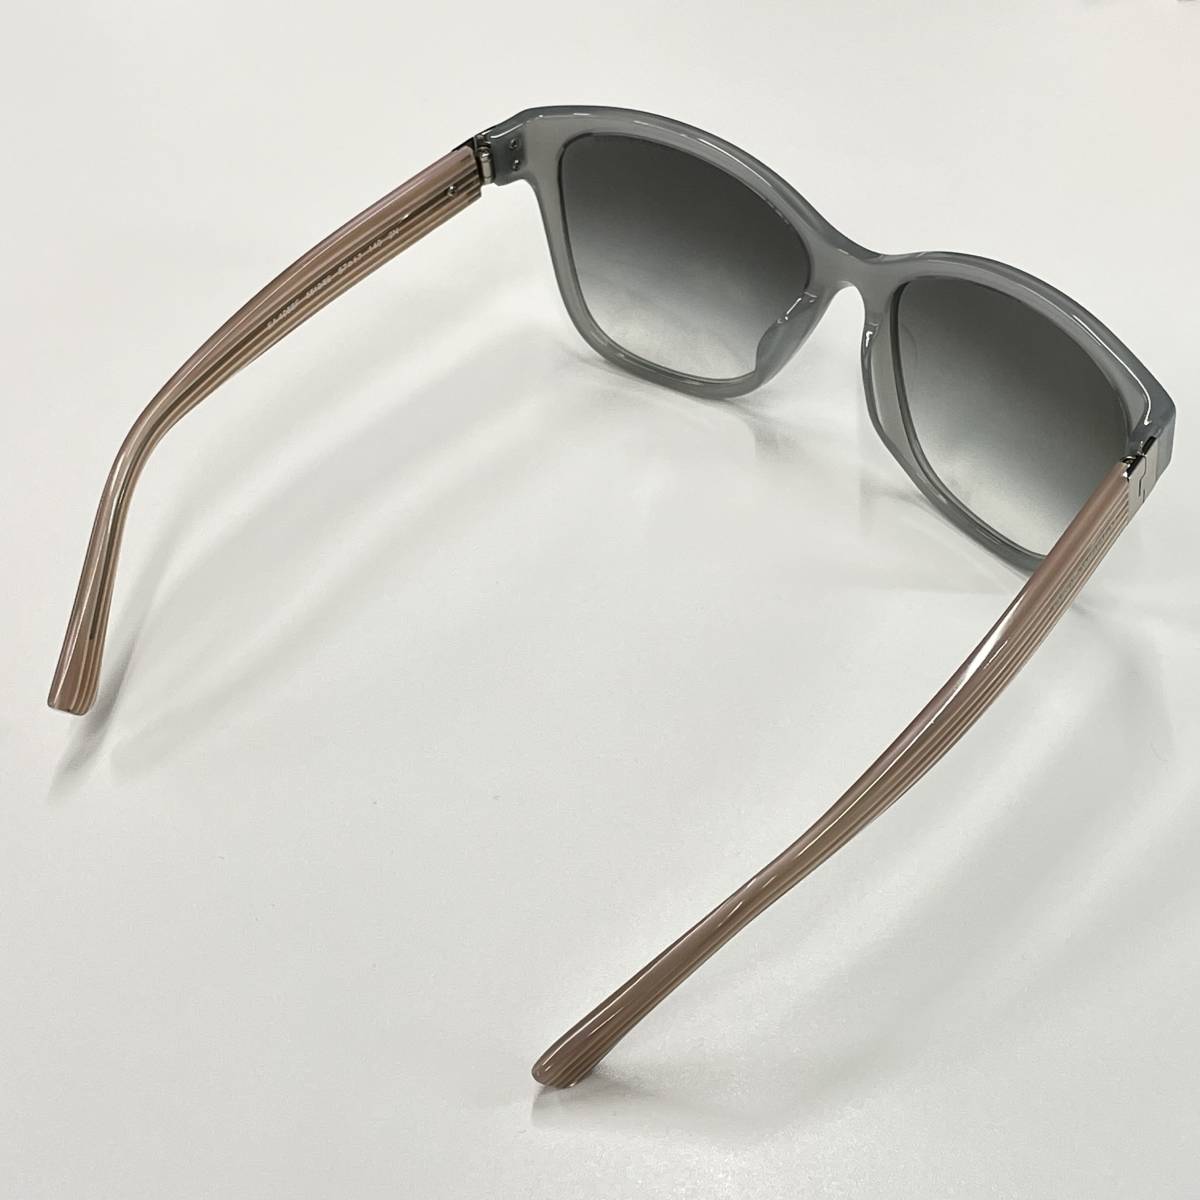  Armani ARMANI солнцезащитные очки цвет линзы серый No.44